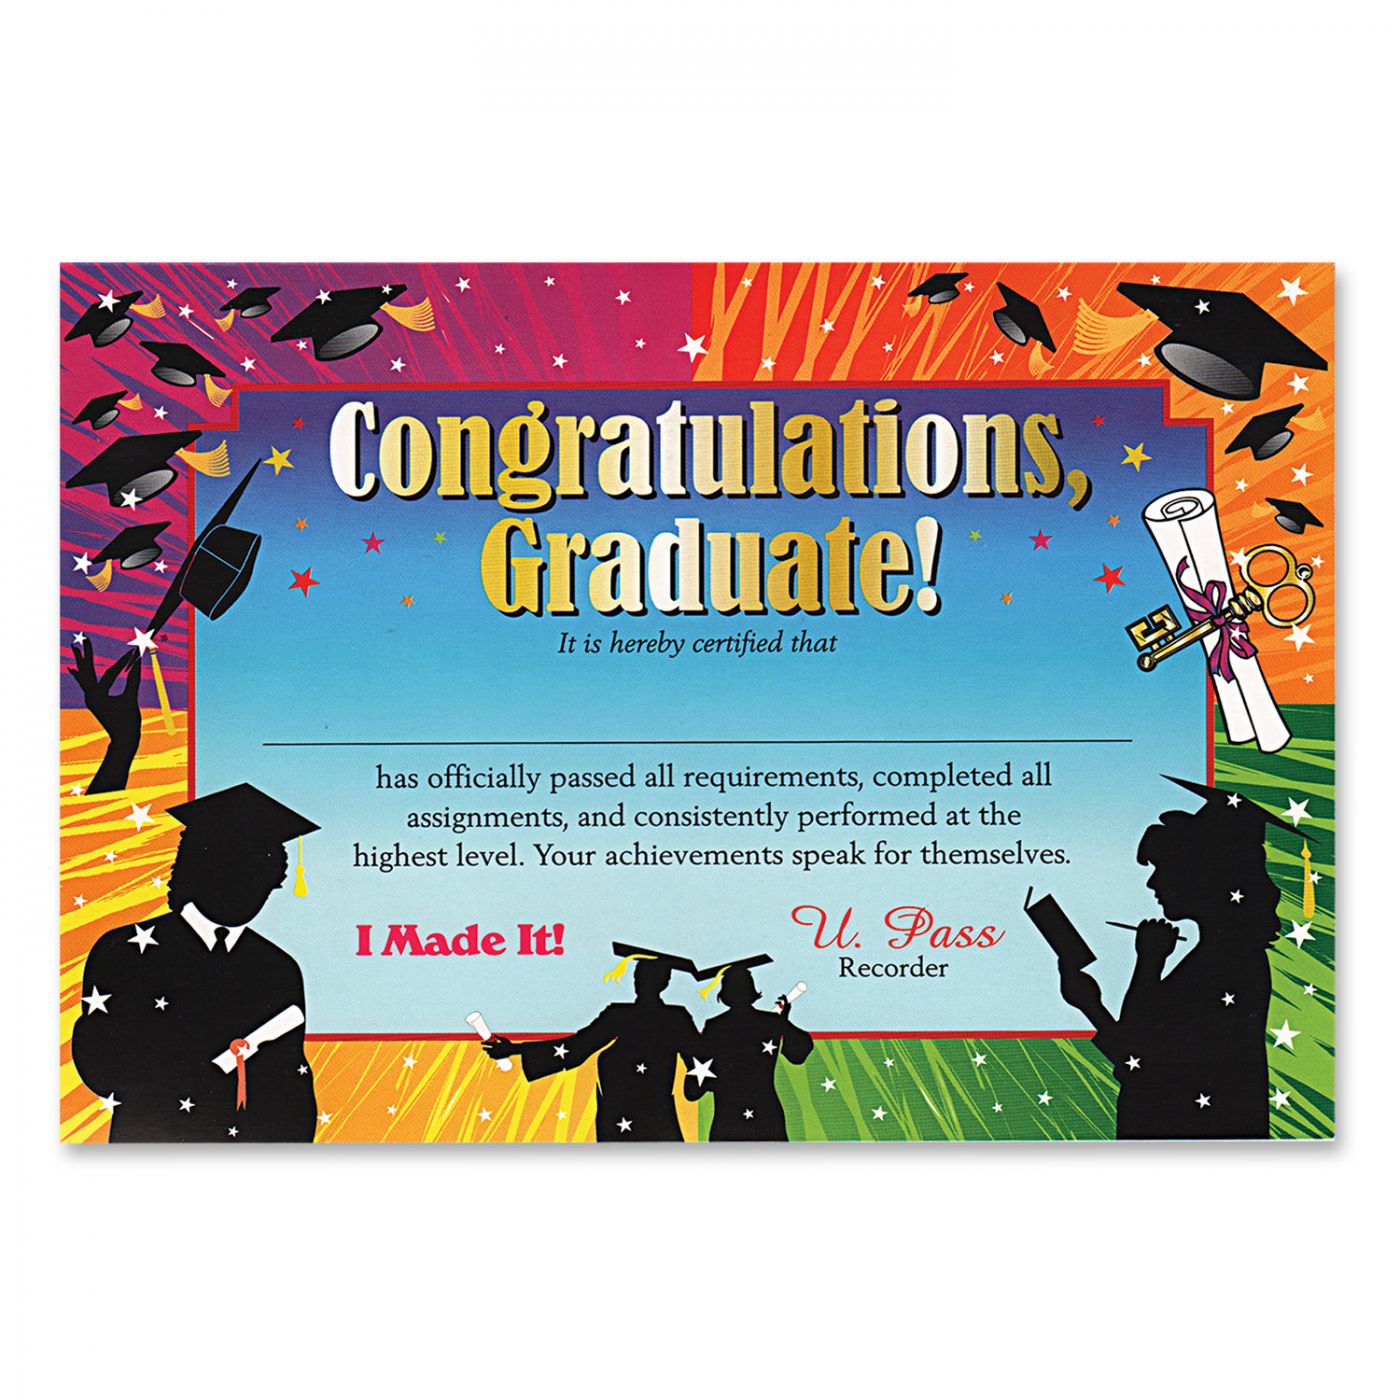 Congratulations Graduate Certificate (6) image